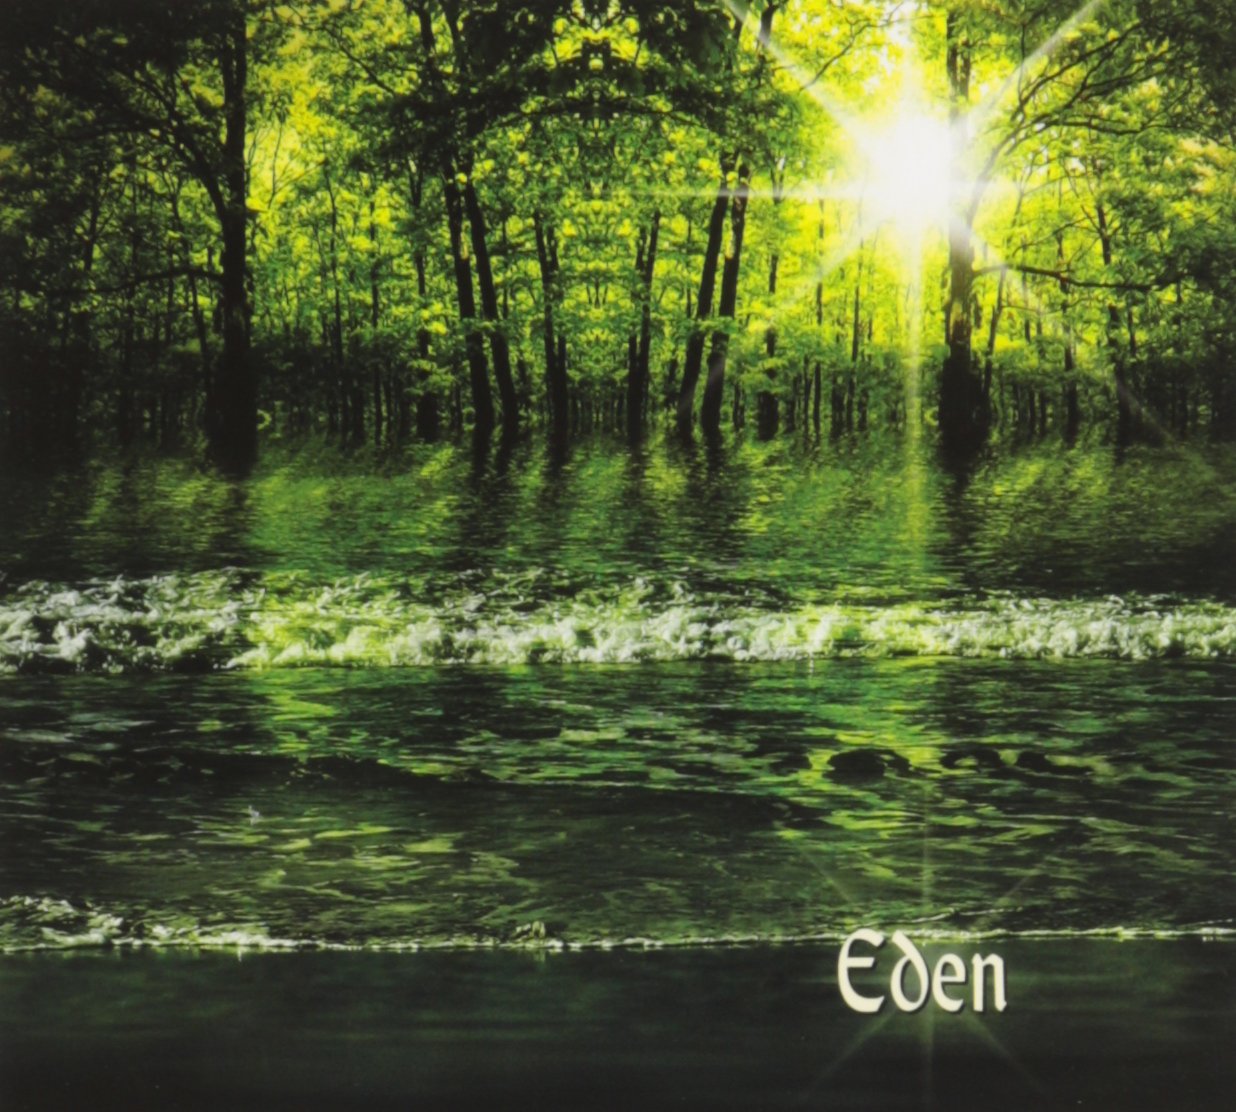 Eden CD Front Cover - Jennifer Parsignault